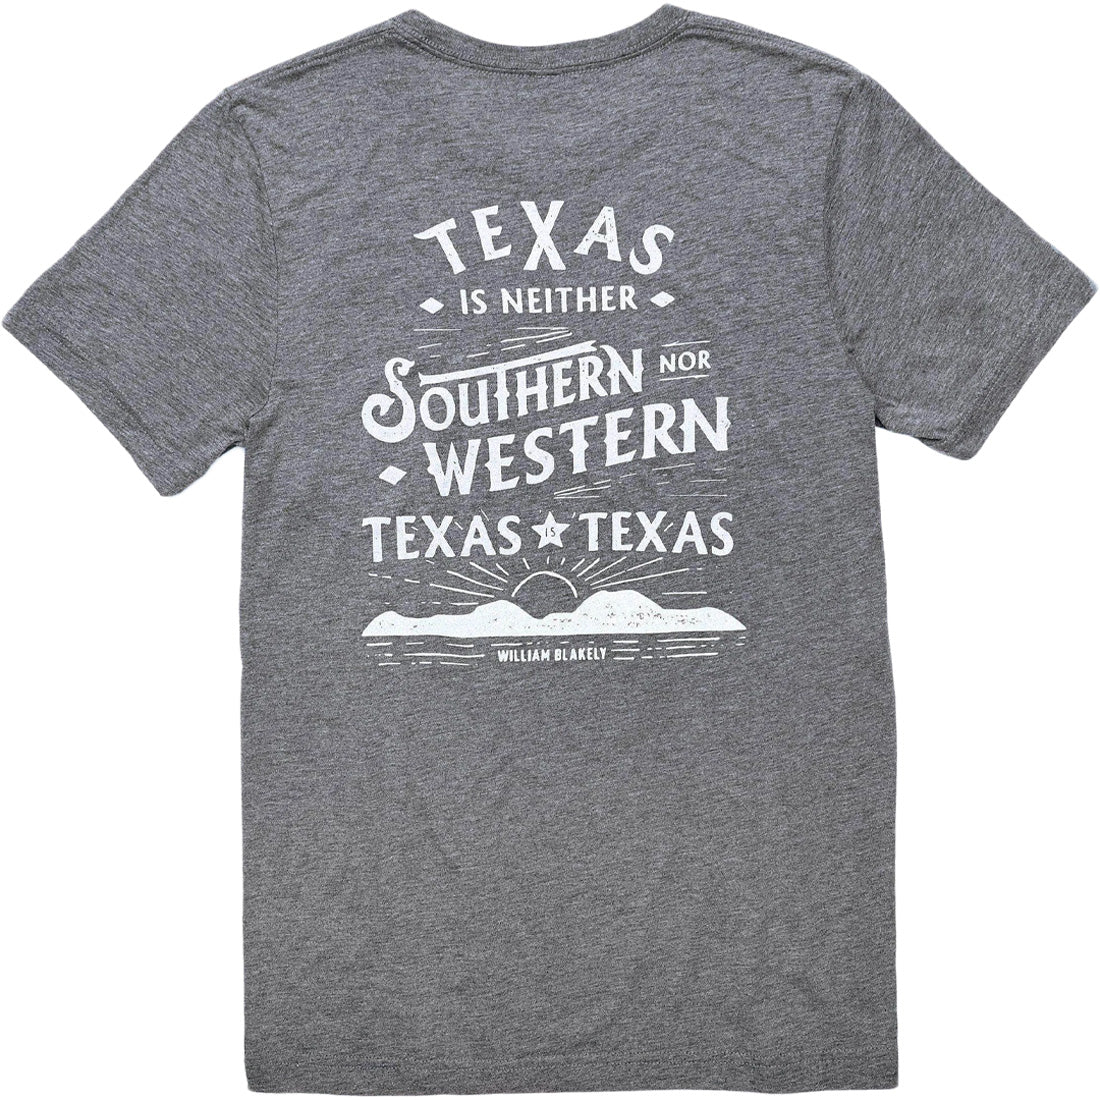 Texas Standard Texas is Texas Tee - Men's